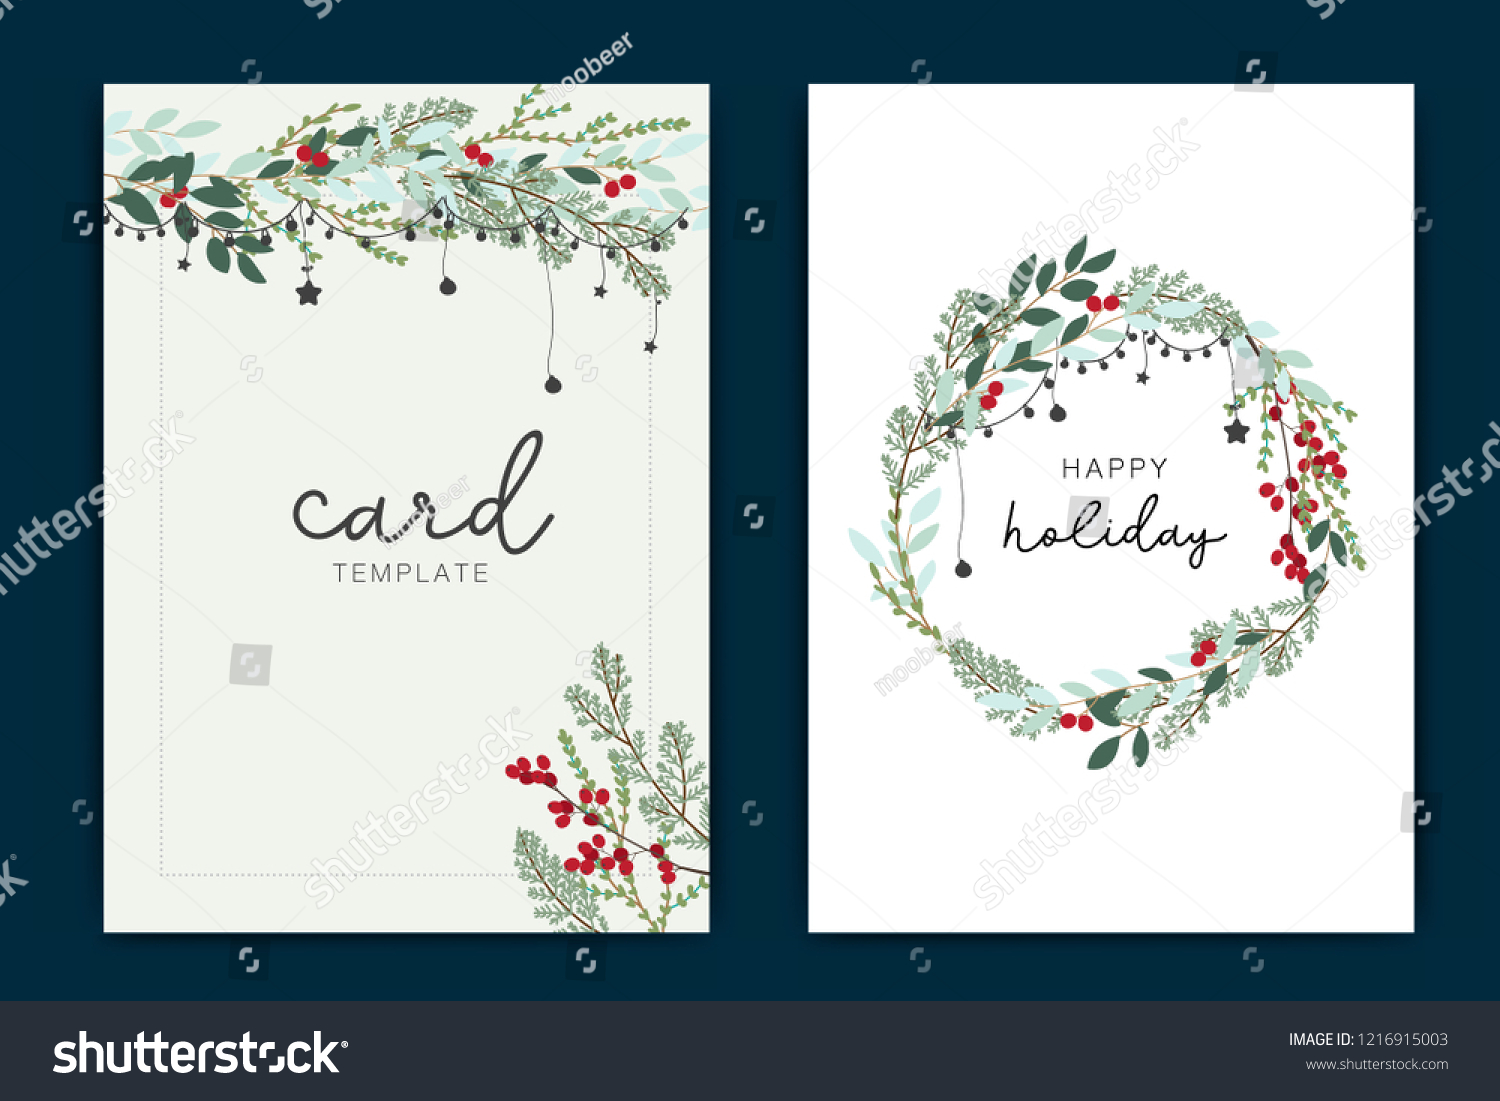 Happy Holidays Card Vorlage mit grünem Blatt und roter Beere With Regard To Happy Holidays Card Template